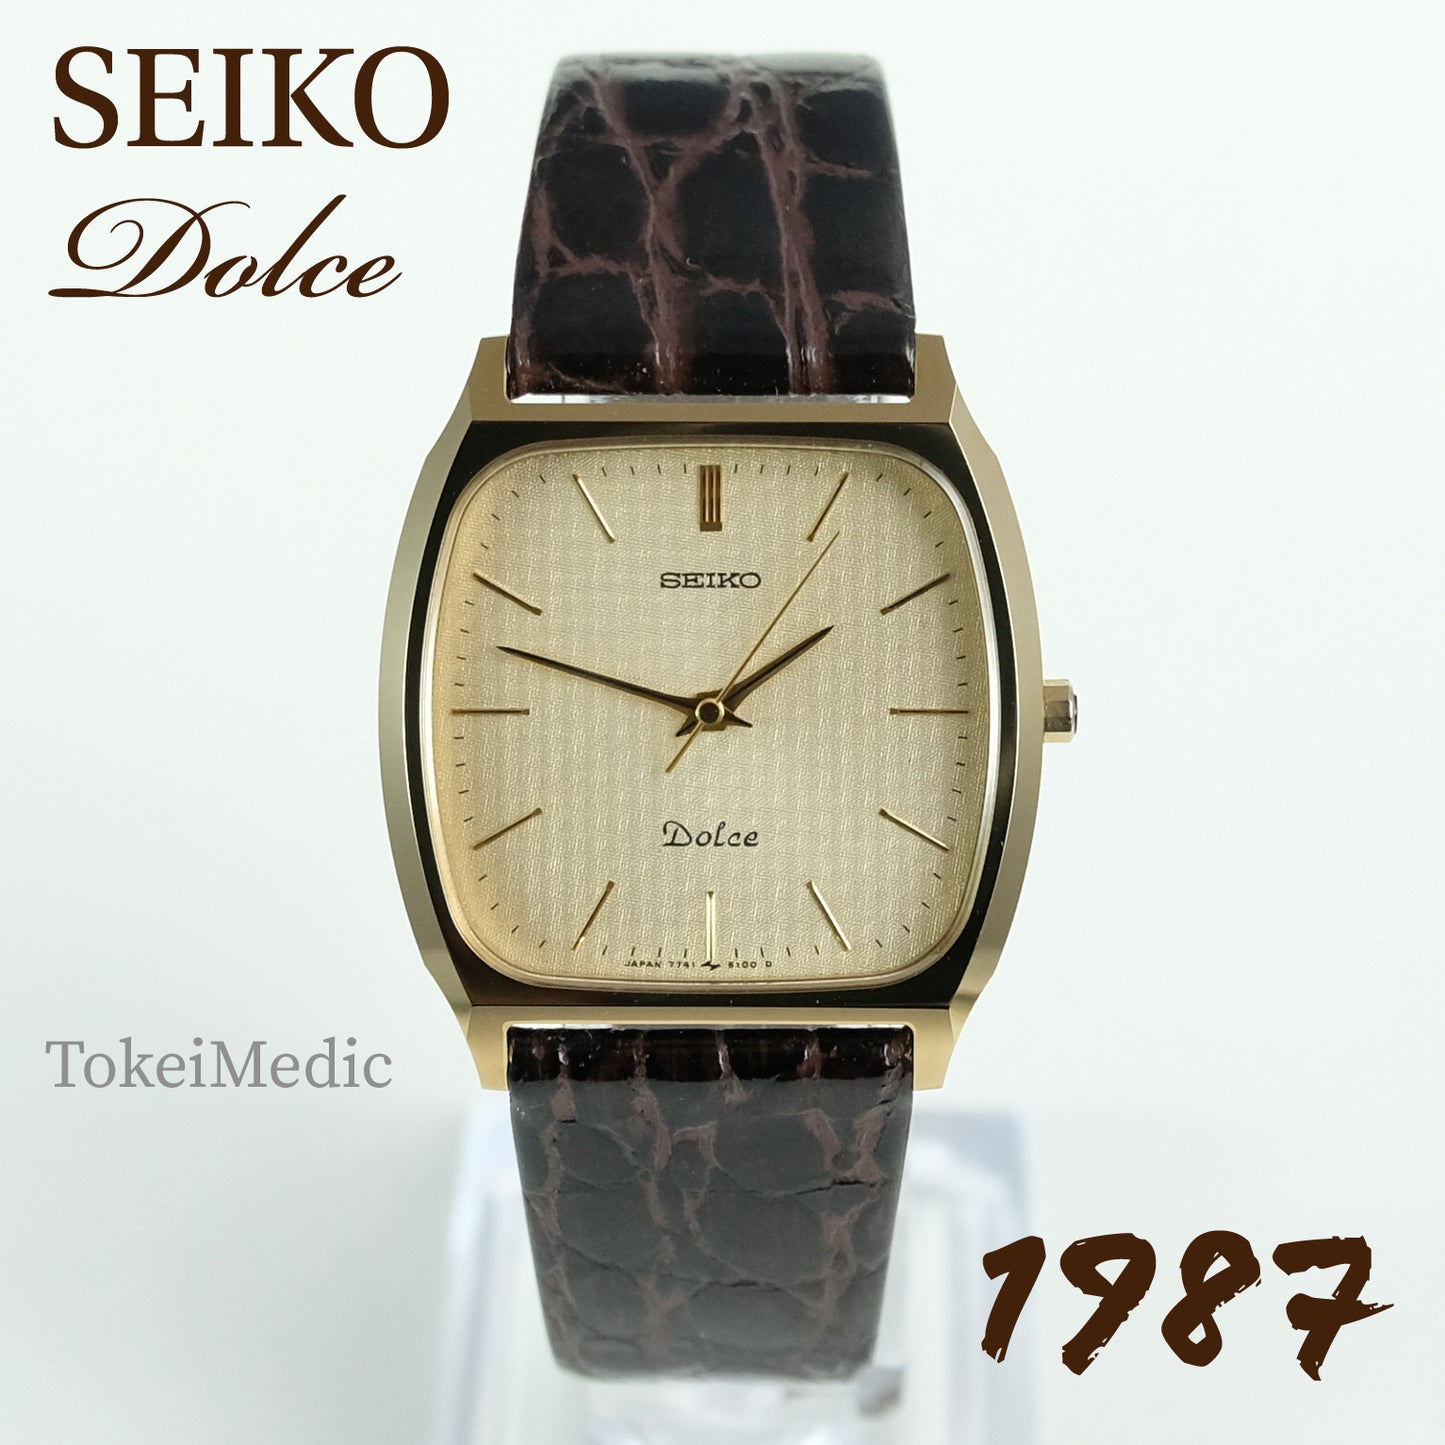 Set of Two - 1974 Seiko GS 5646-7011 & 1987 Seiko Dolce 7741-5100